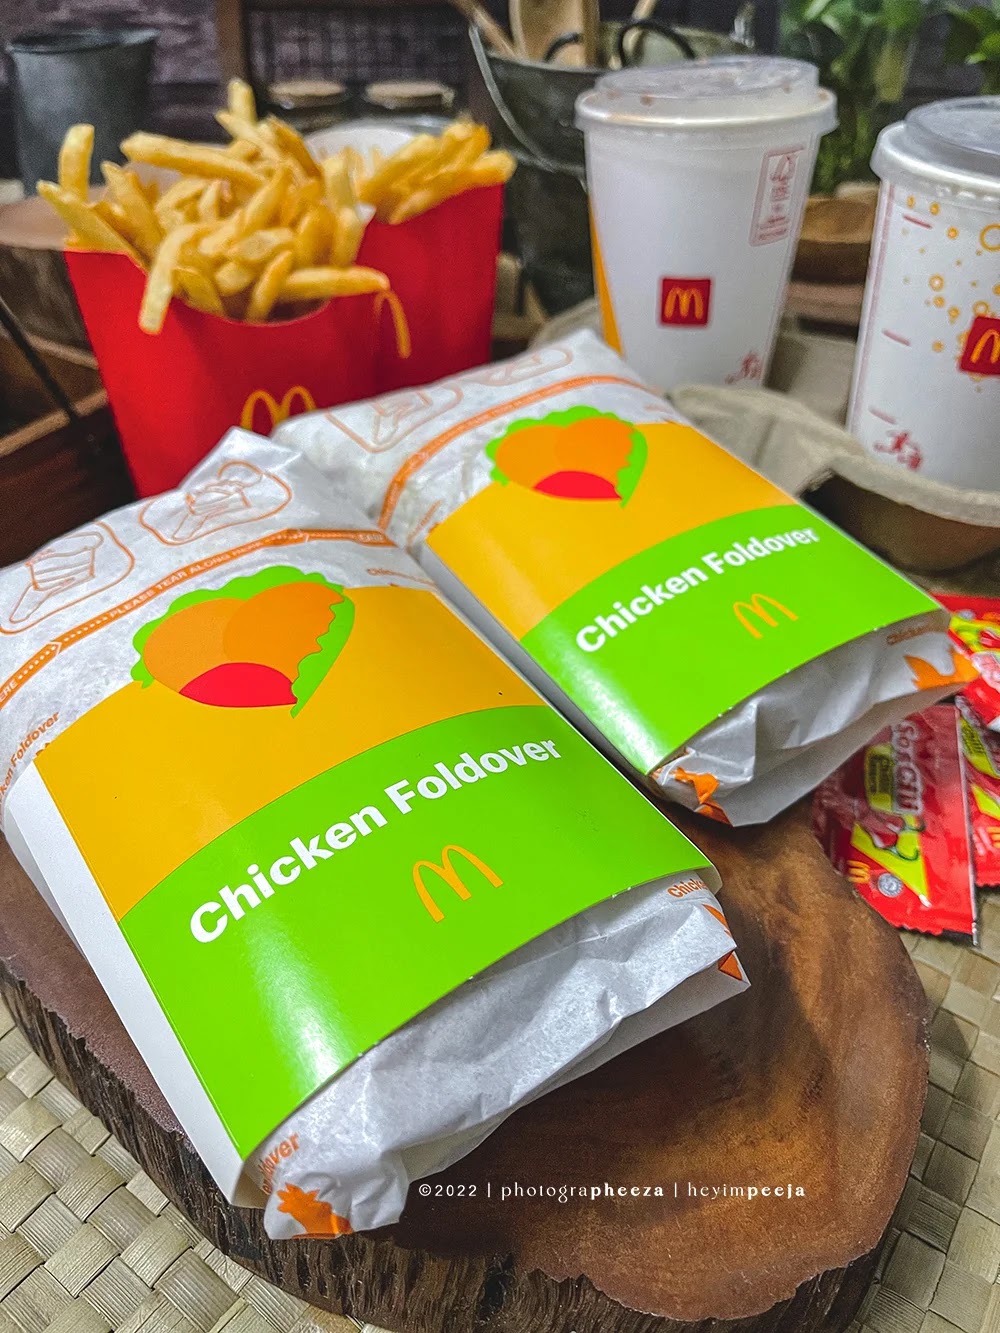 Chicken Foldover McDonalds